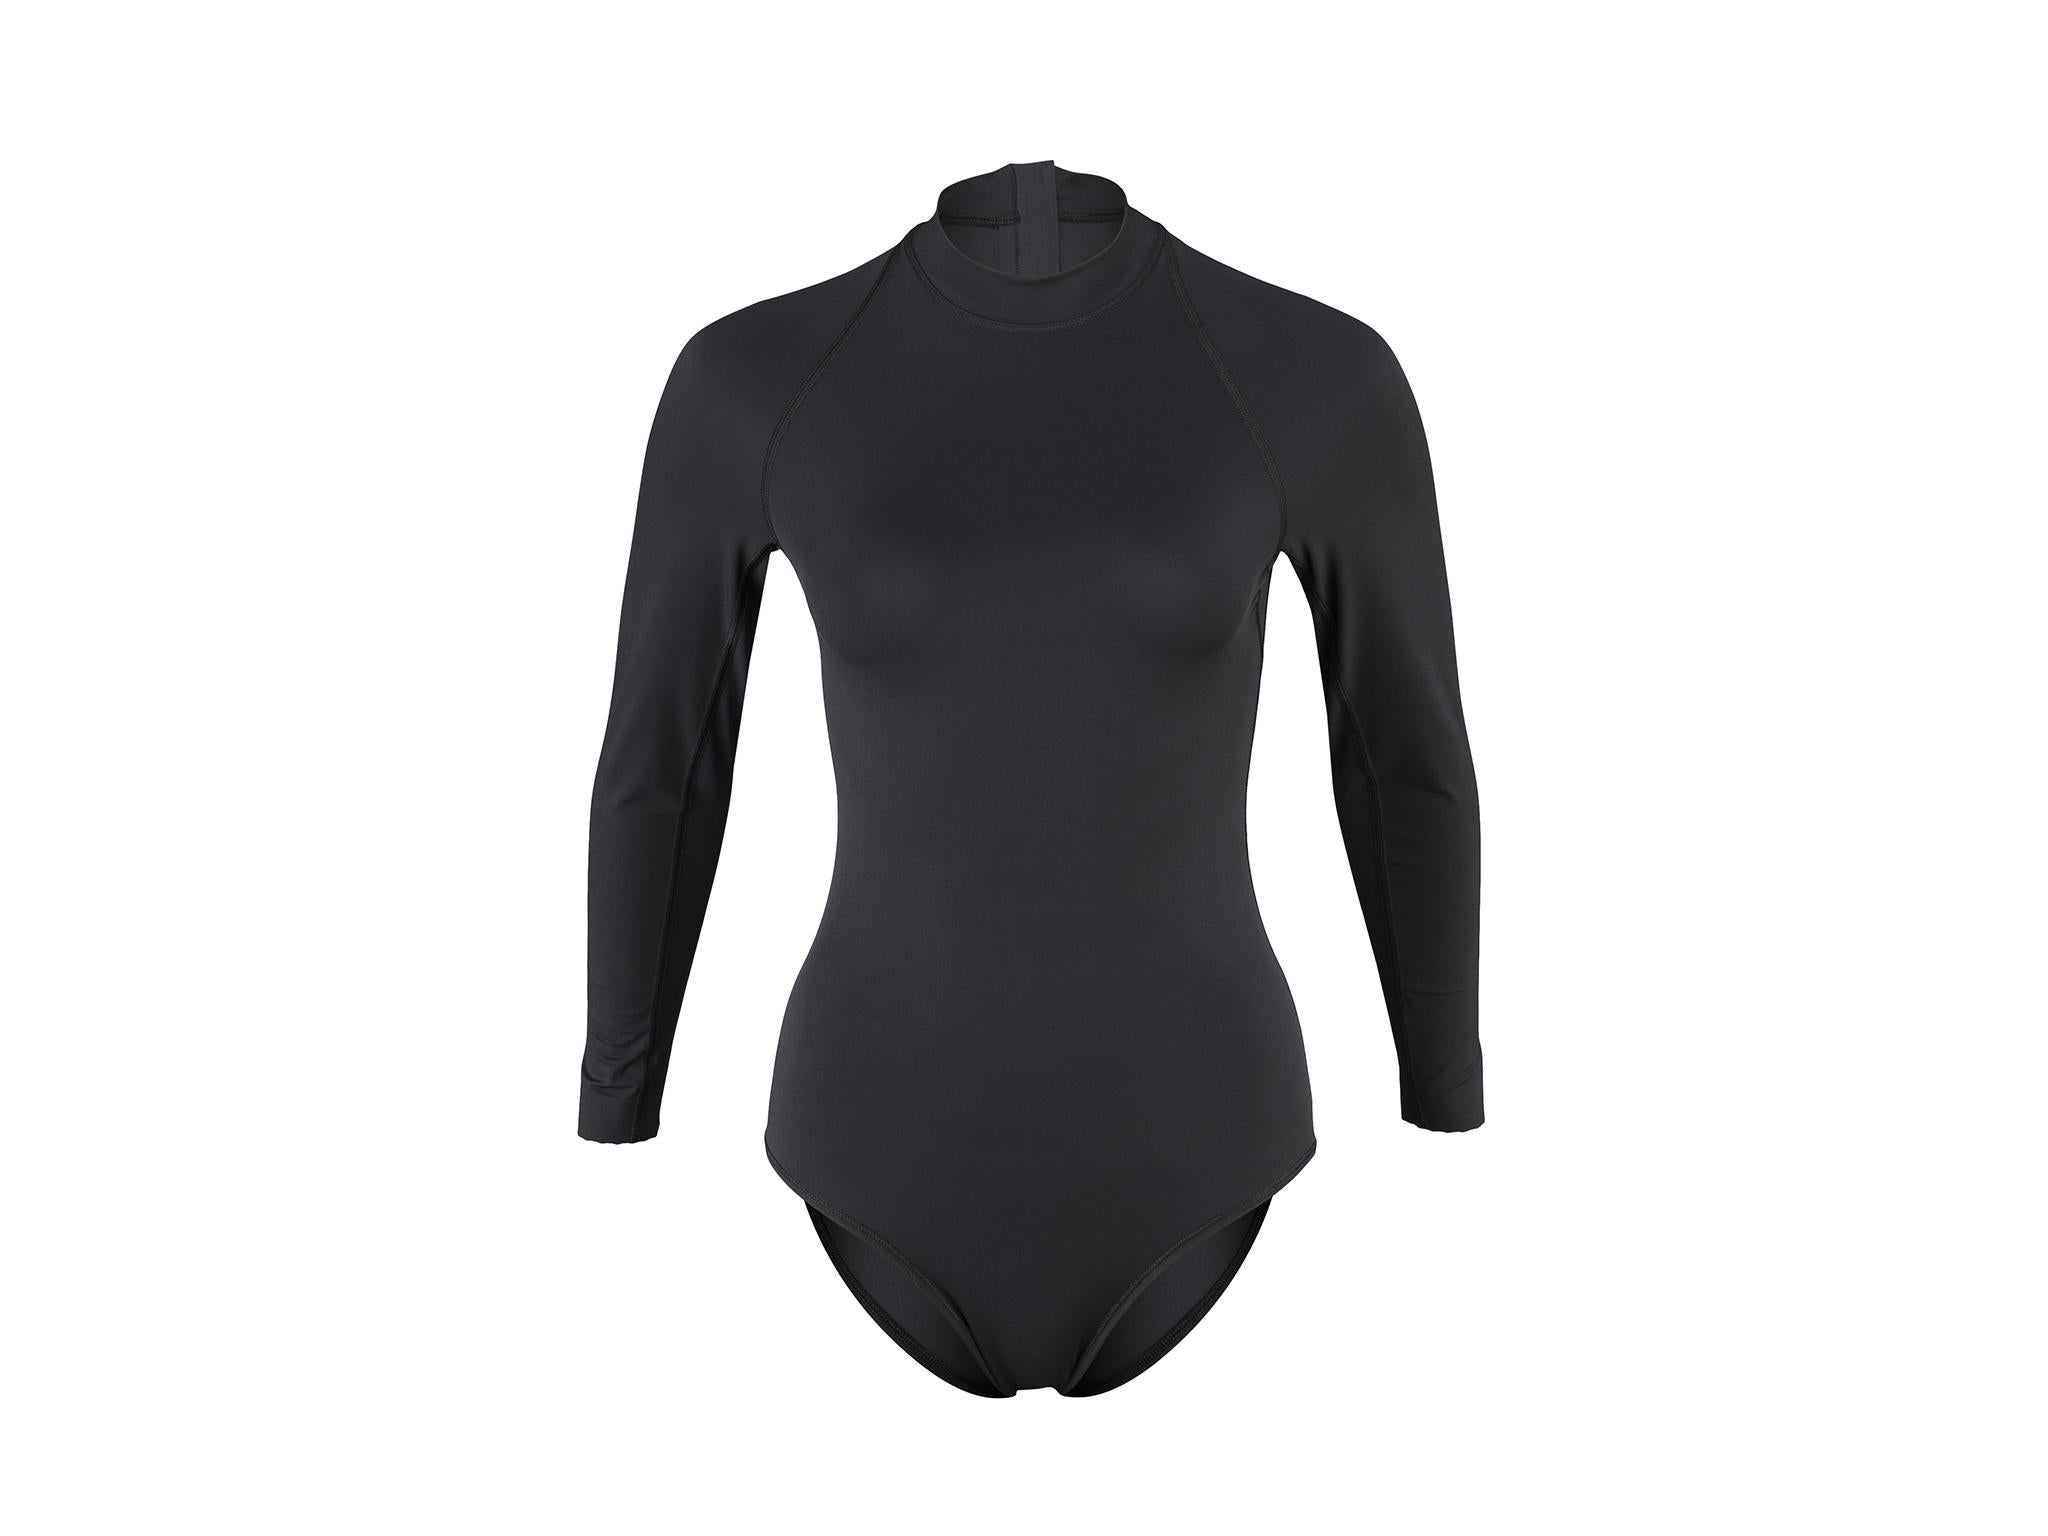 swimwear for swimmers